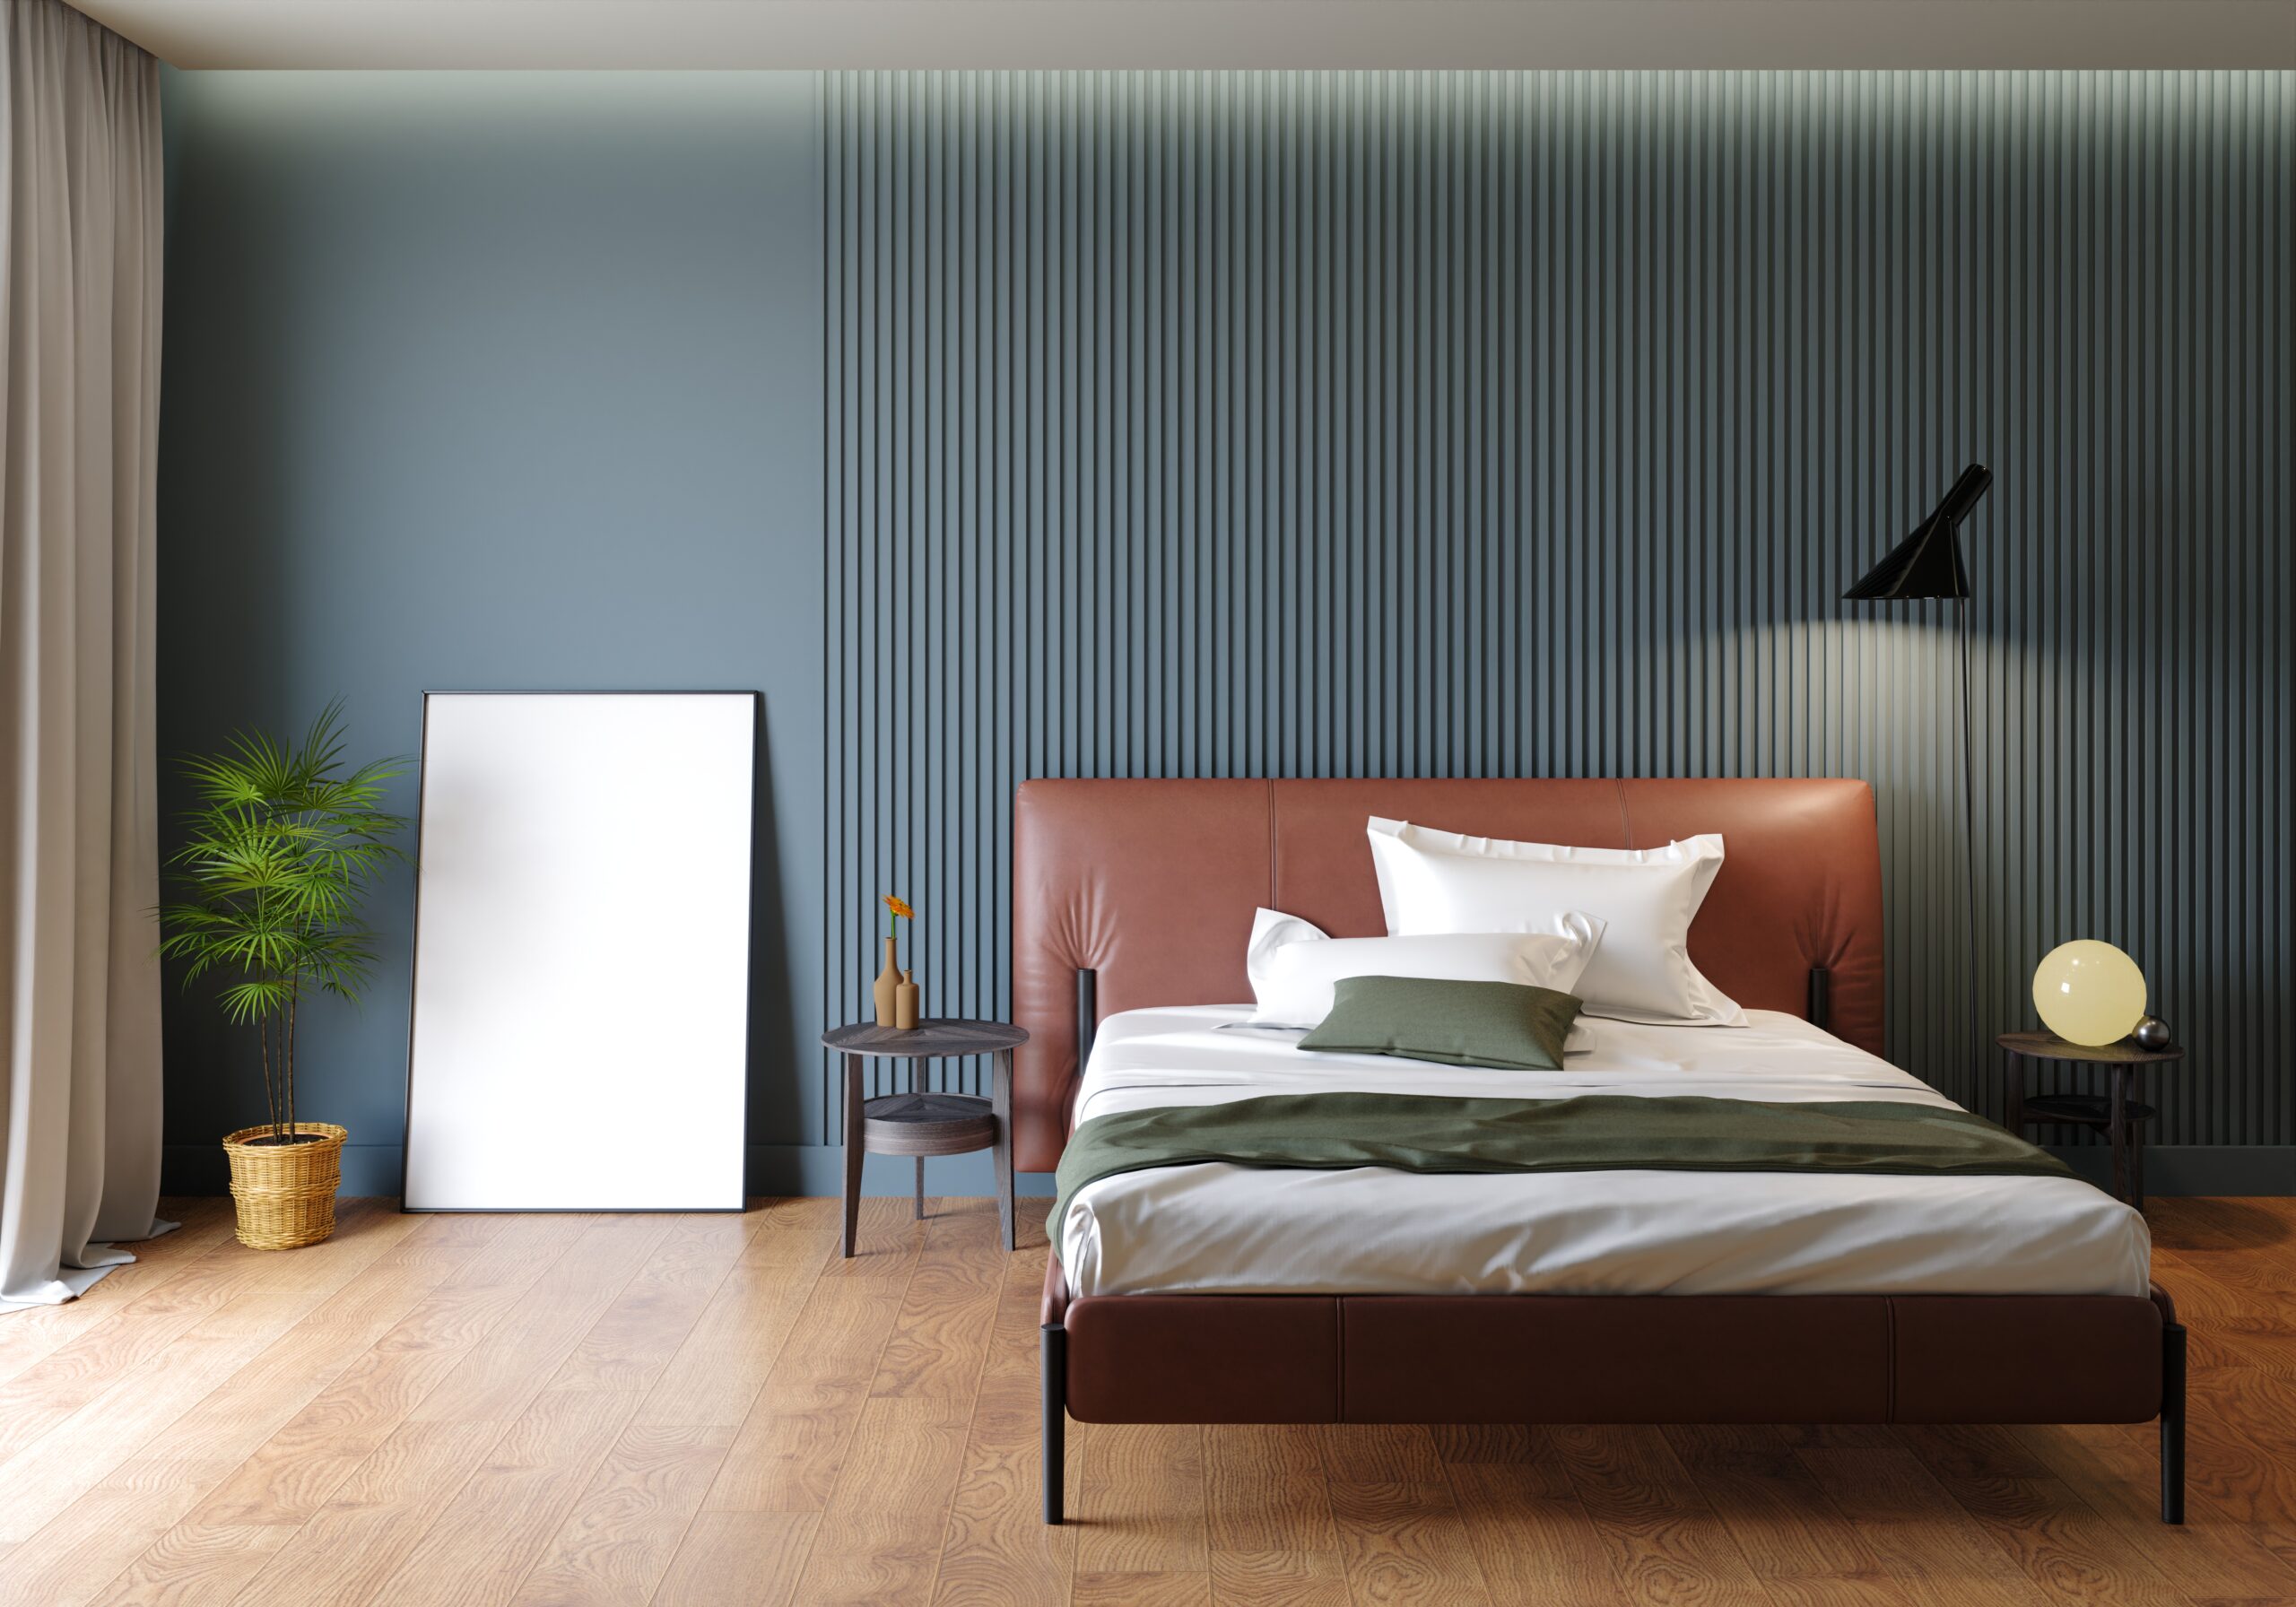 3d rendering of a bedroom in cozy colors.